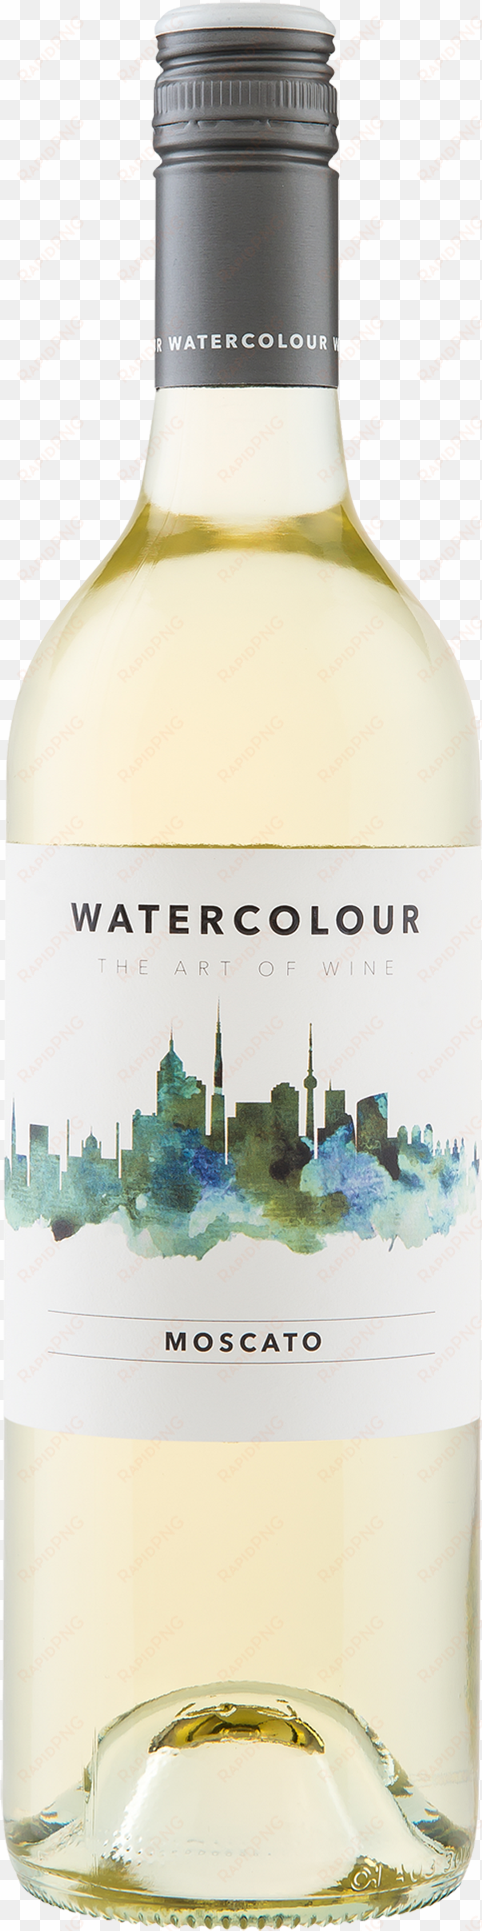 watercolour moscato - wine